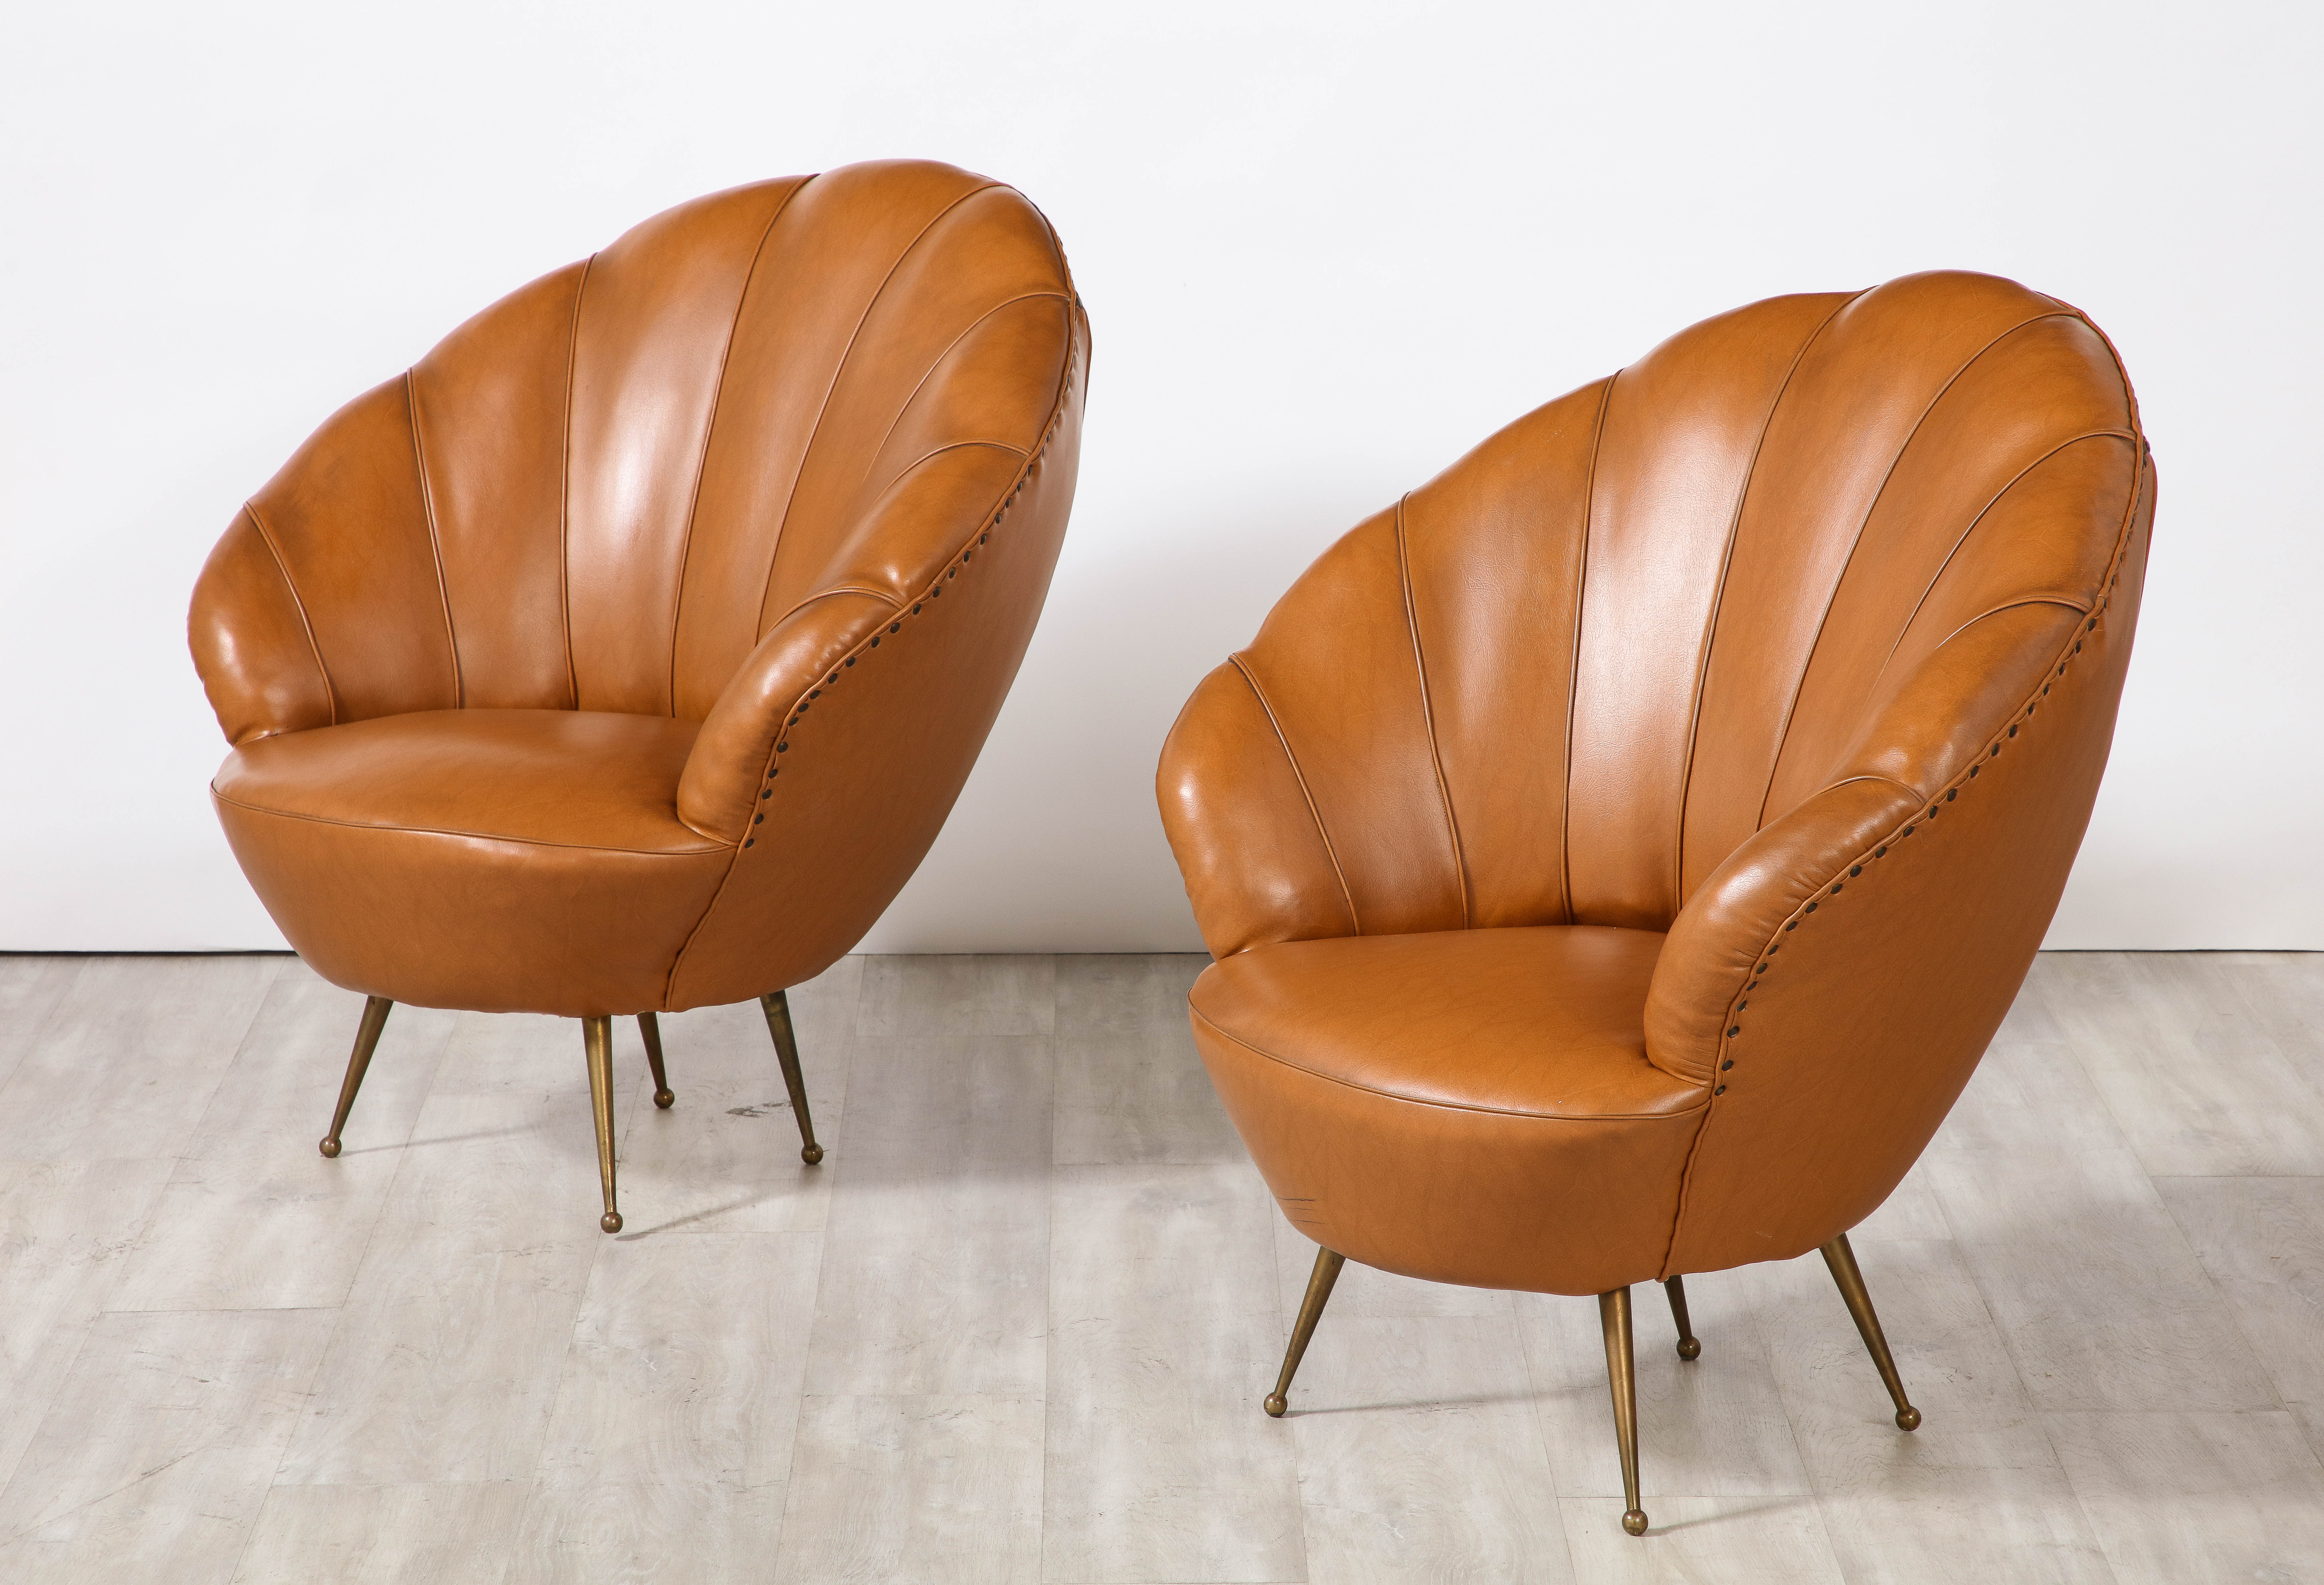 Ein charmantes und skurriles Paar italienischer Loungesessel aus Leder aus den 1950er Jahren mit schalenförmigen, breiten Rückenlehnen. Das reiche cognacfarbene Leder kontrastiert mit der Nagelkopfverzierung und den elegant gespreizten